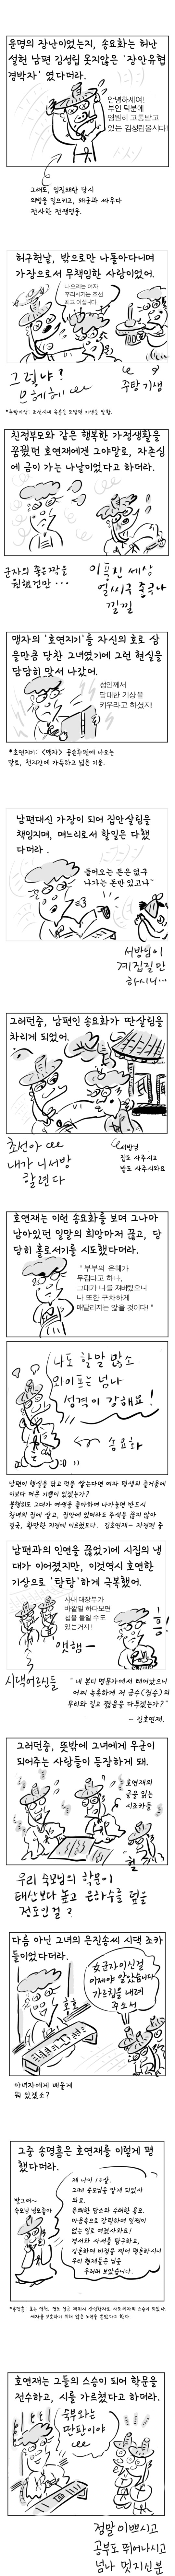 [역사툰] 史(사)람 이야기 3화: 조선 '걸크러쉬' 김호연재
